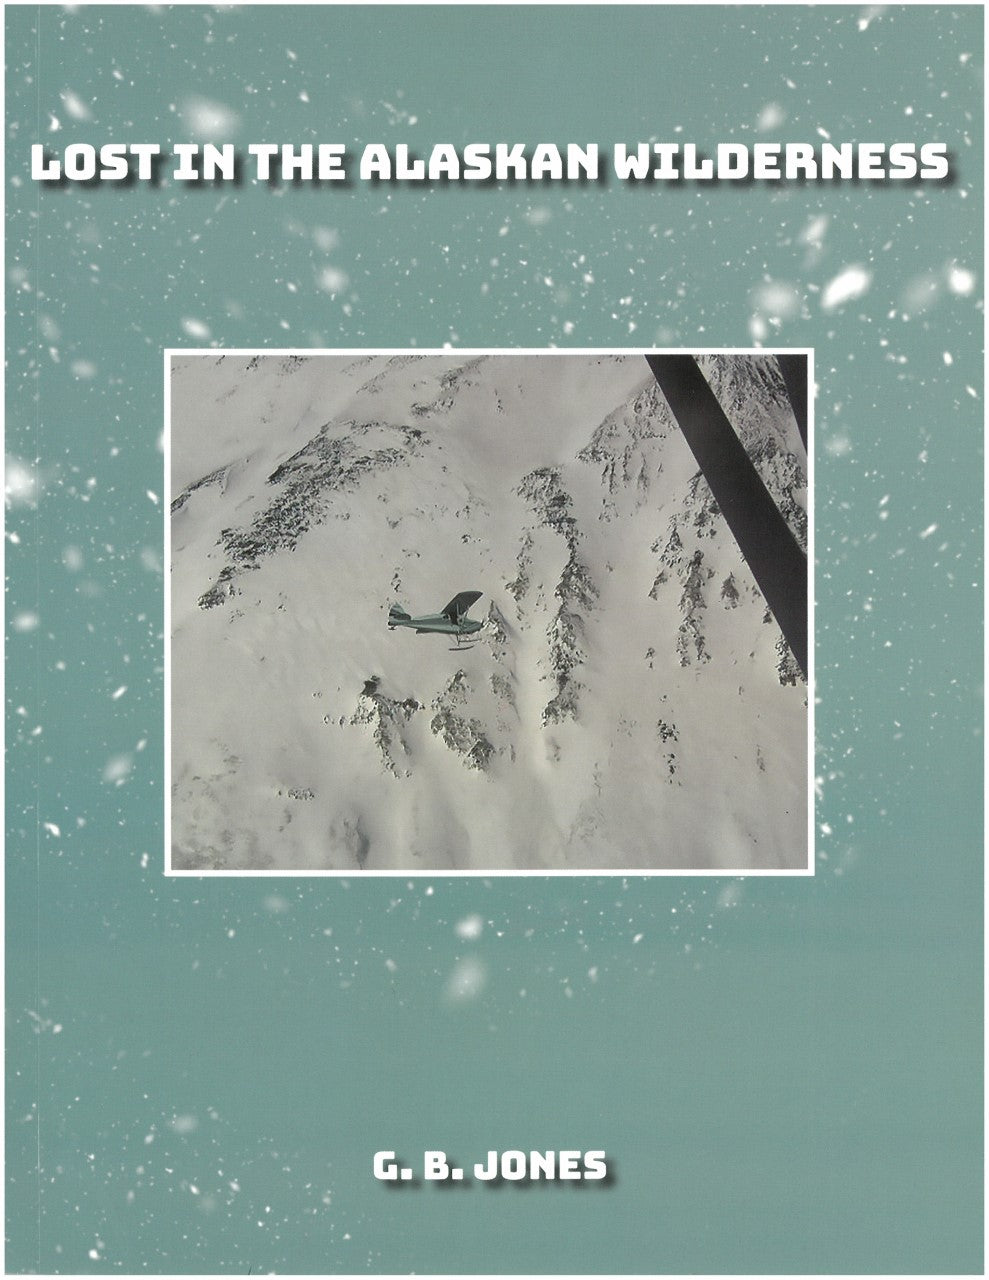 Lost In the Alaskan Wilderness by G. B. Jones